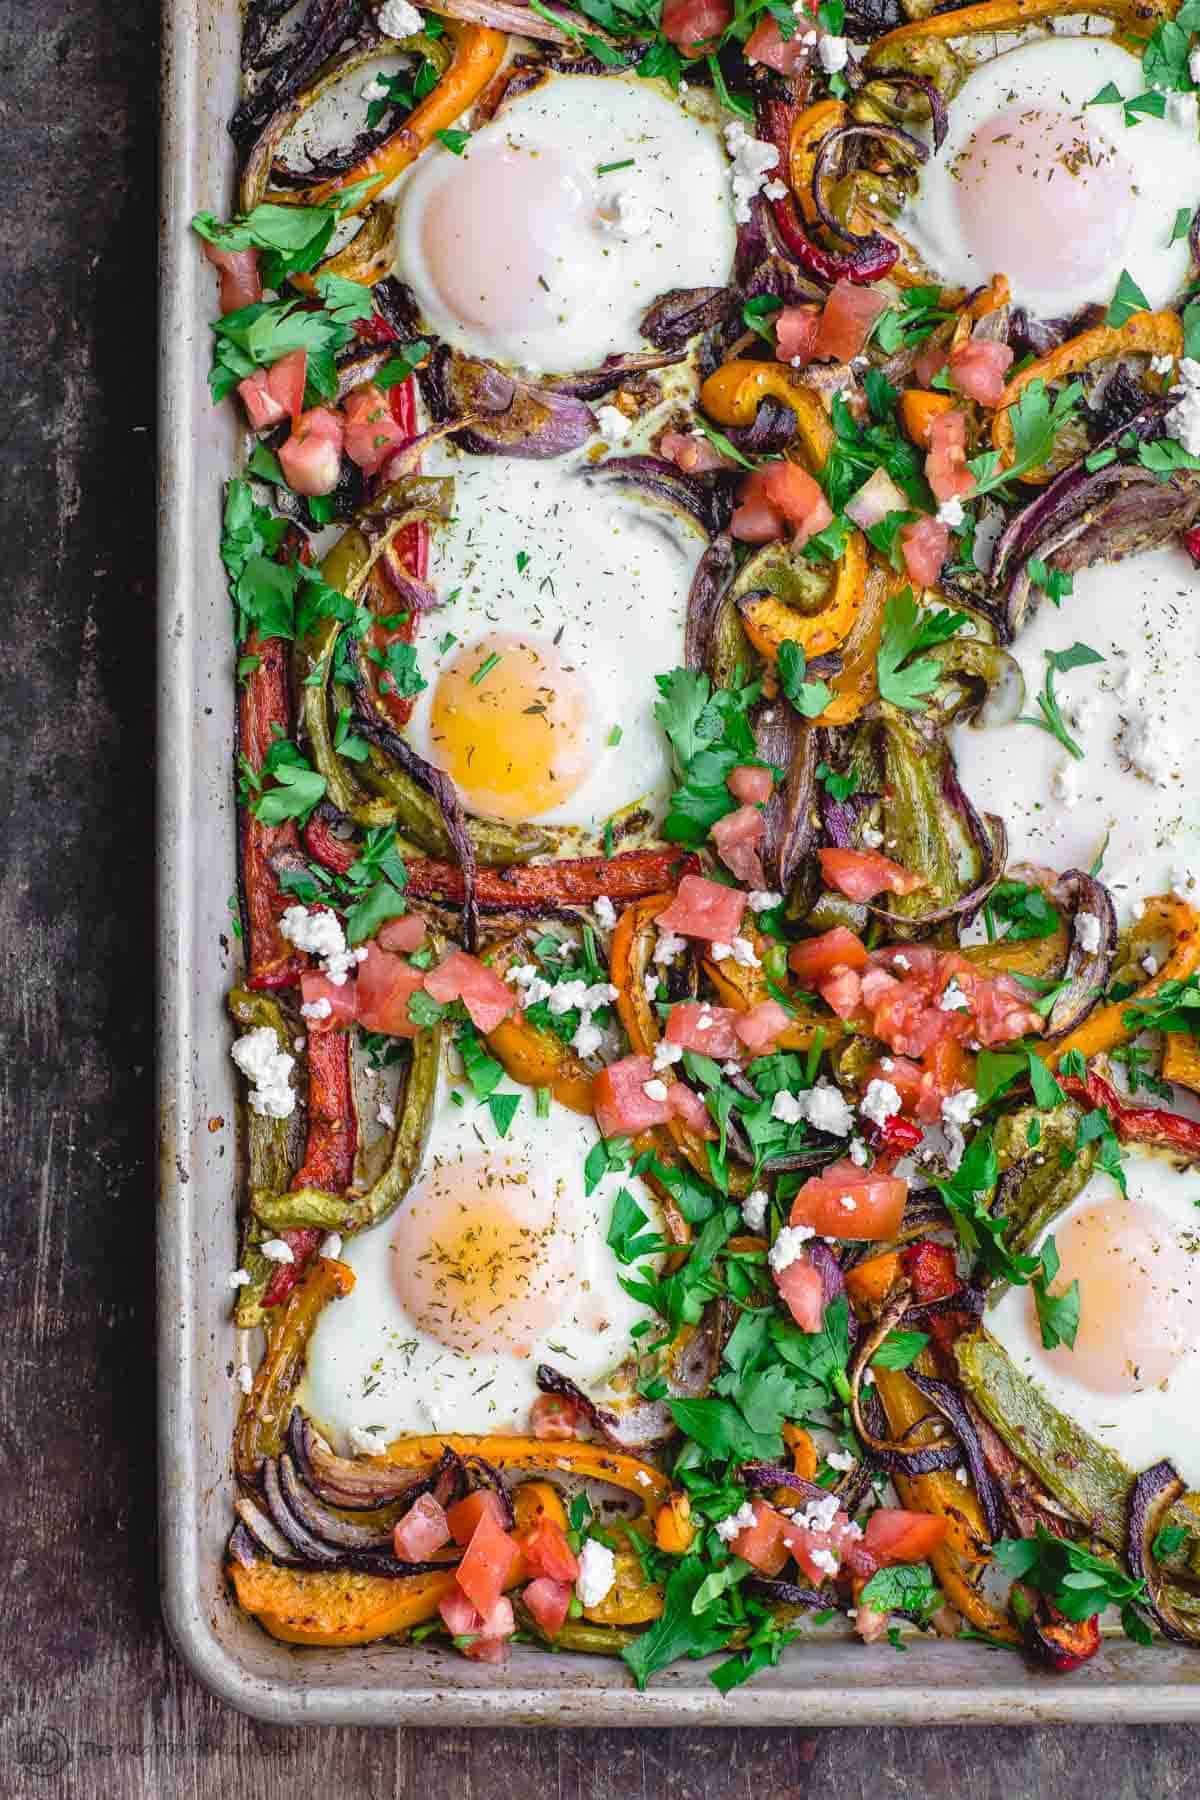 Vegan Mediterranean Sheet Pan Dinner - Crowded Kitchen